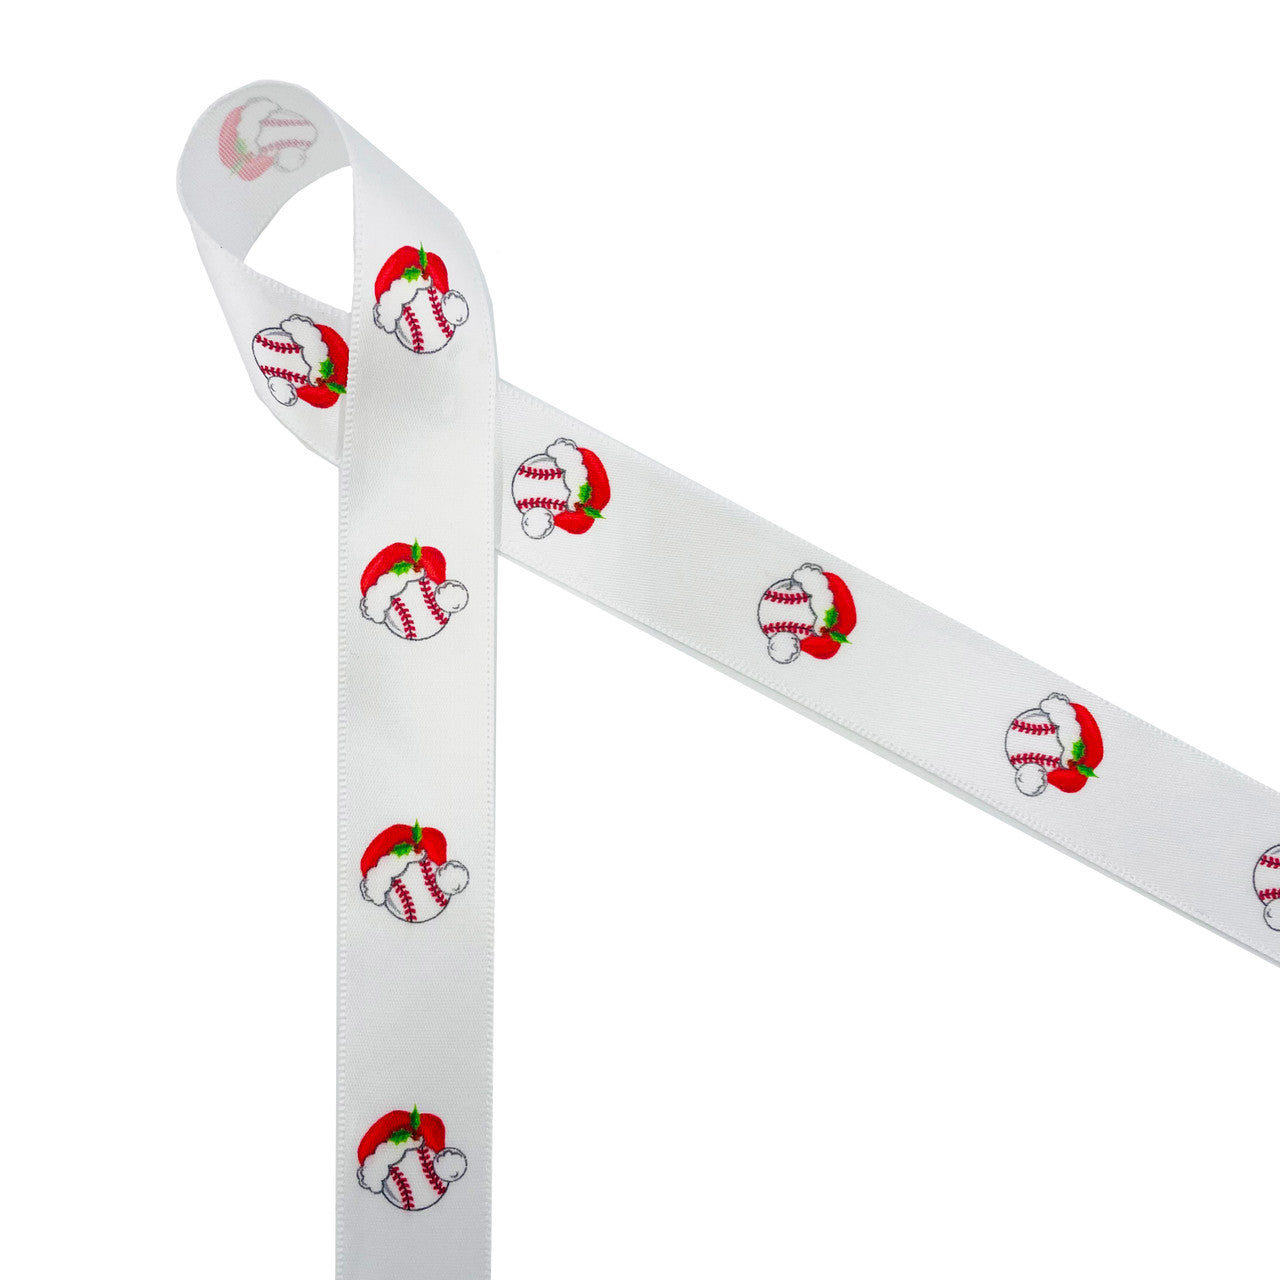 Christmas ribbon soft balls with Santa Hats printed on 7/8" white single face satin ribbon